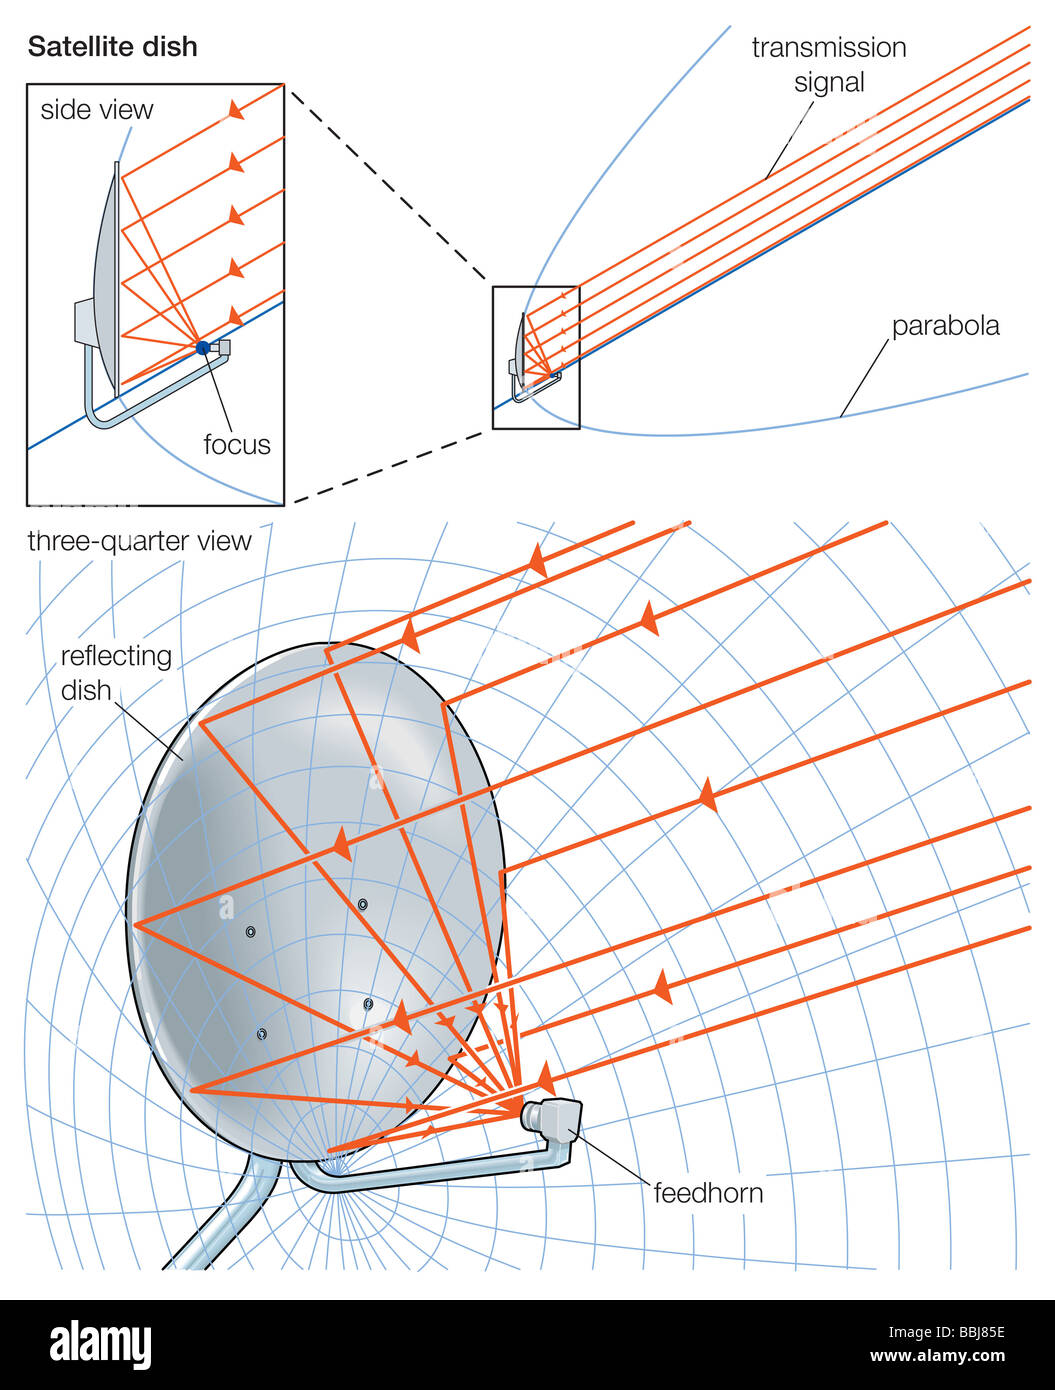 Satellitenschüssel, geformt wie eine Portion ein Paraboloid um Sendesignale auf den pickup Empfänger (geführt) zu konzentrieren. Stockfoto